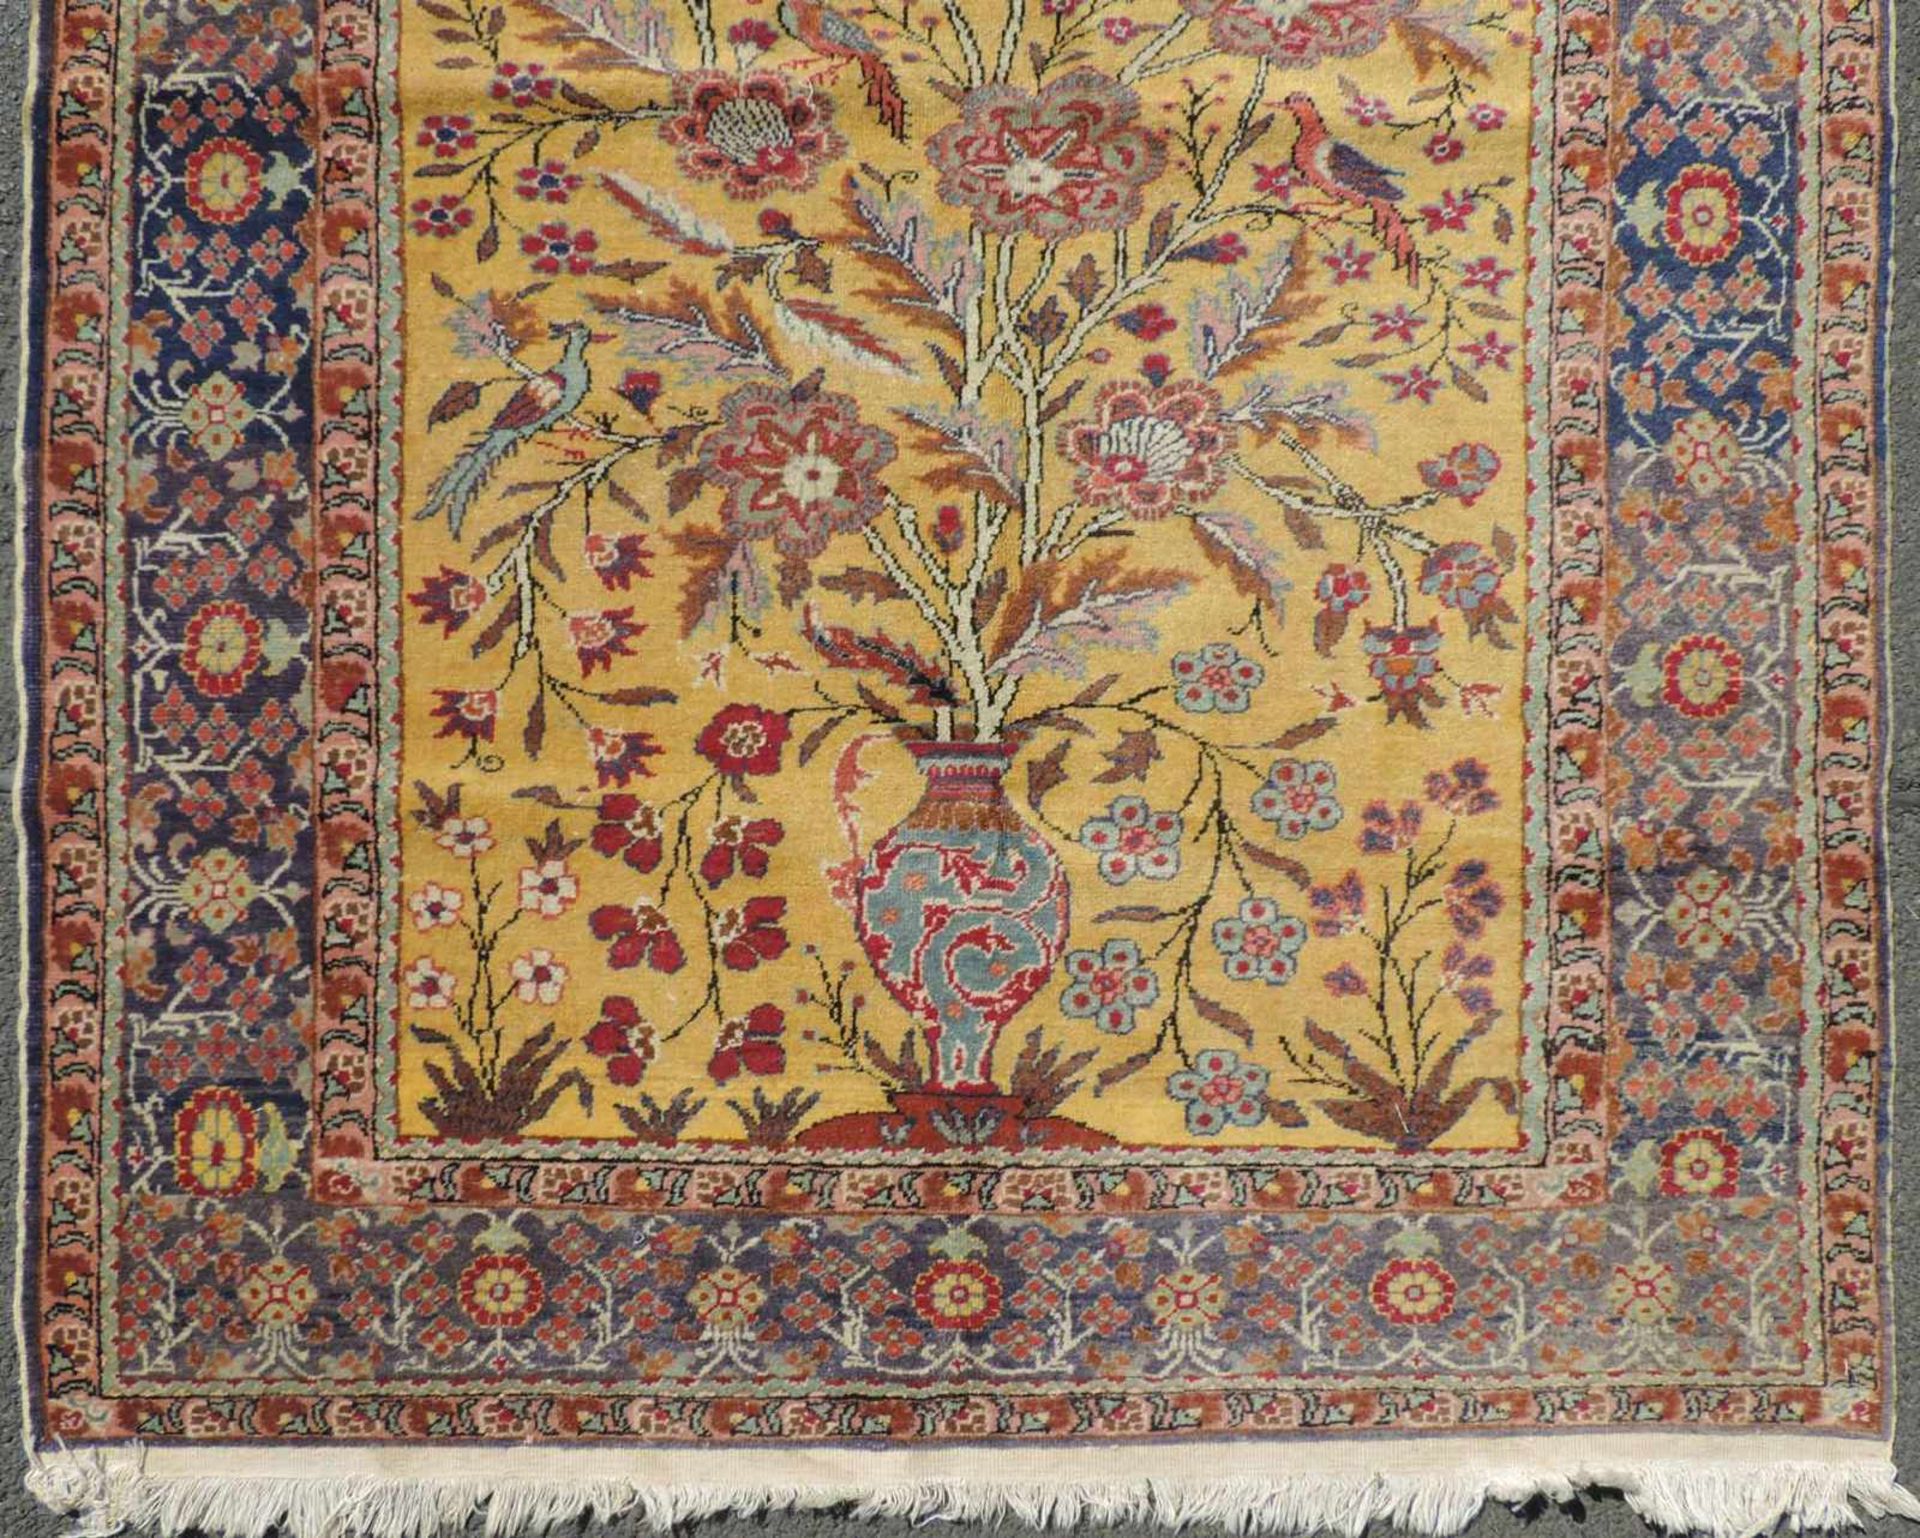 Kayseri Gebetsteppich. Türkei. Antik. Um 1910. 176 cm x 122 cm. Handgeknüpft. Wolle auf Baumwolle. - Bild 2 aus 6